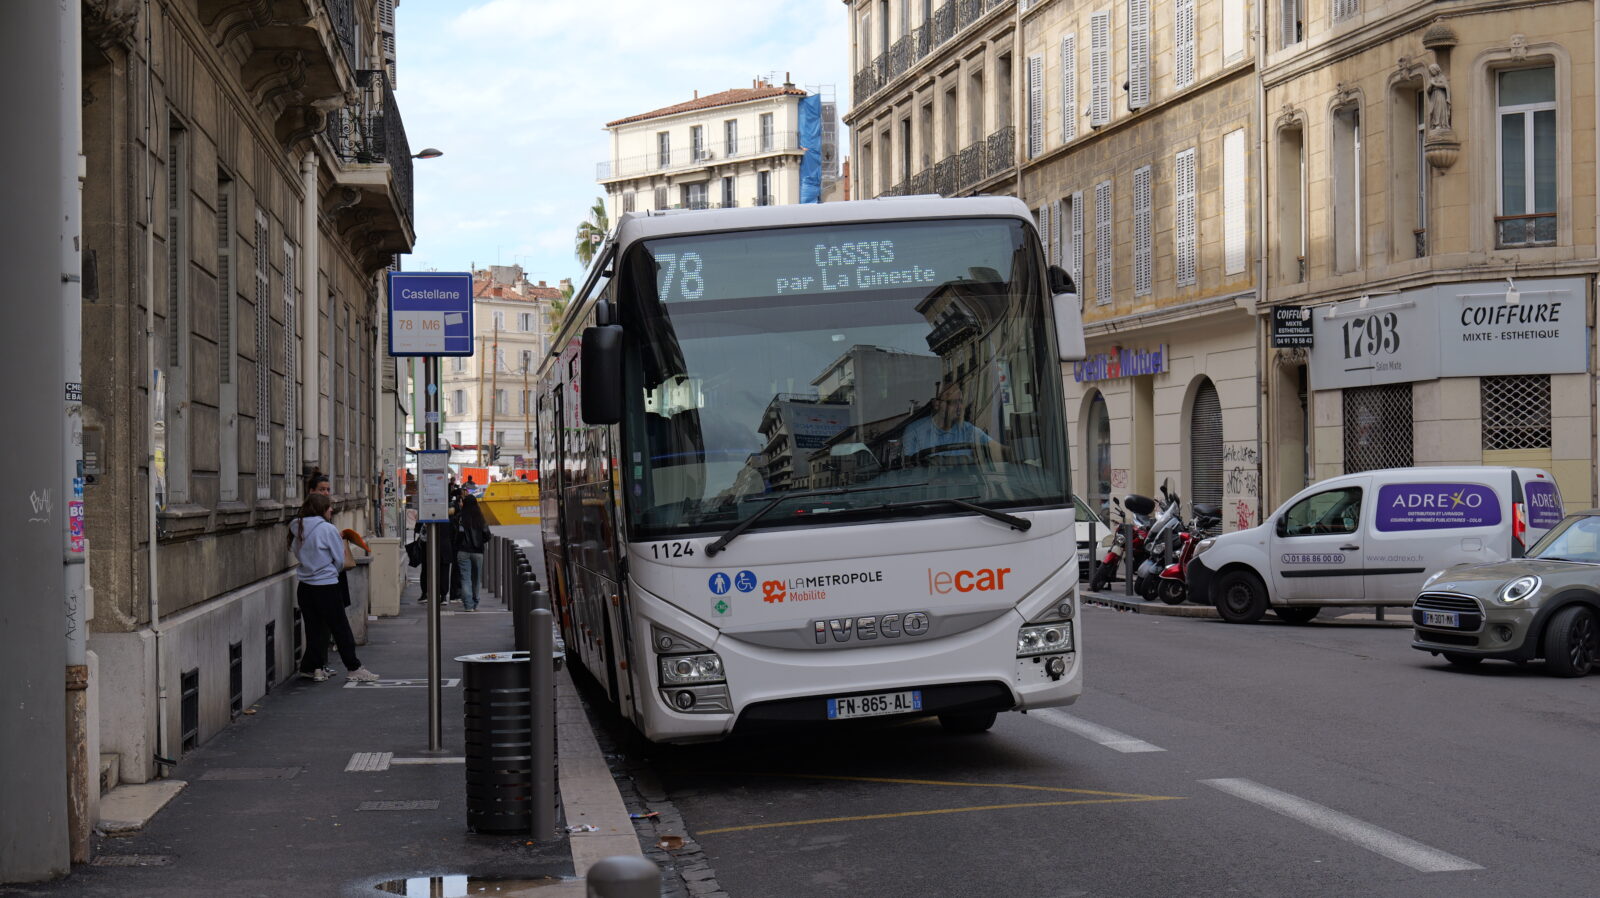 Bus Cassis Marseille arrêt bus 78 Castellane Toulon